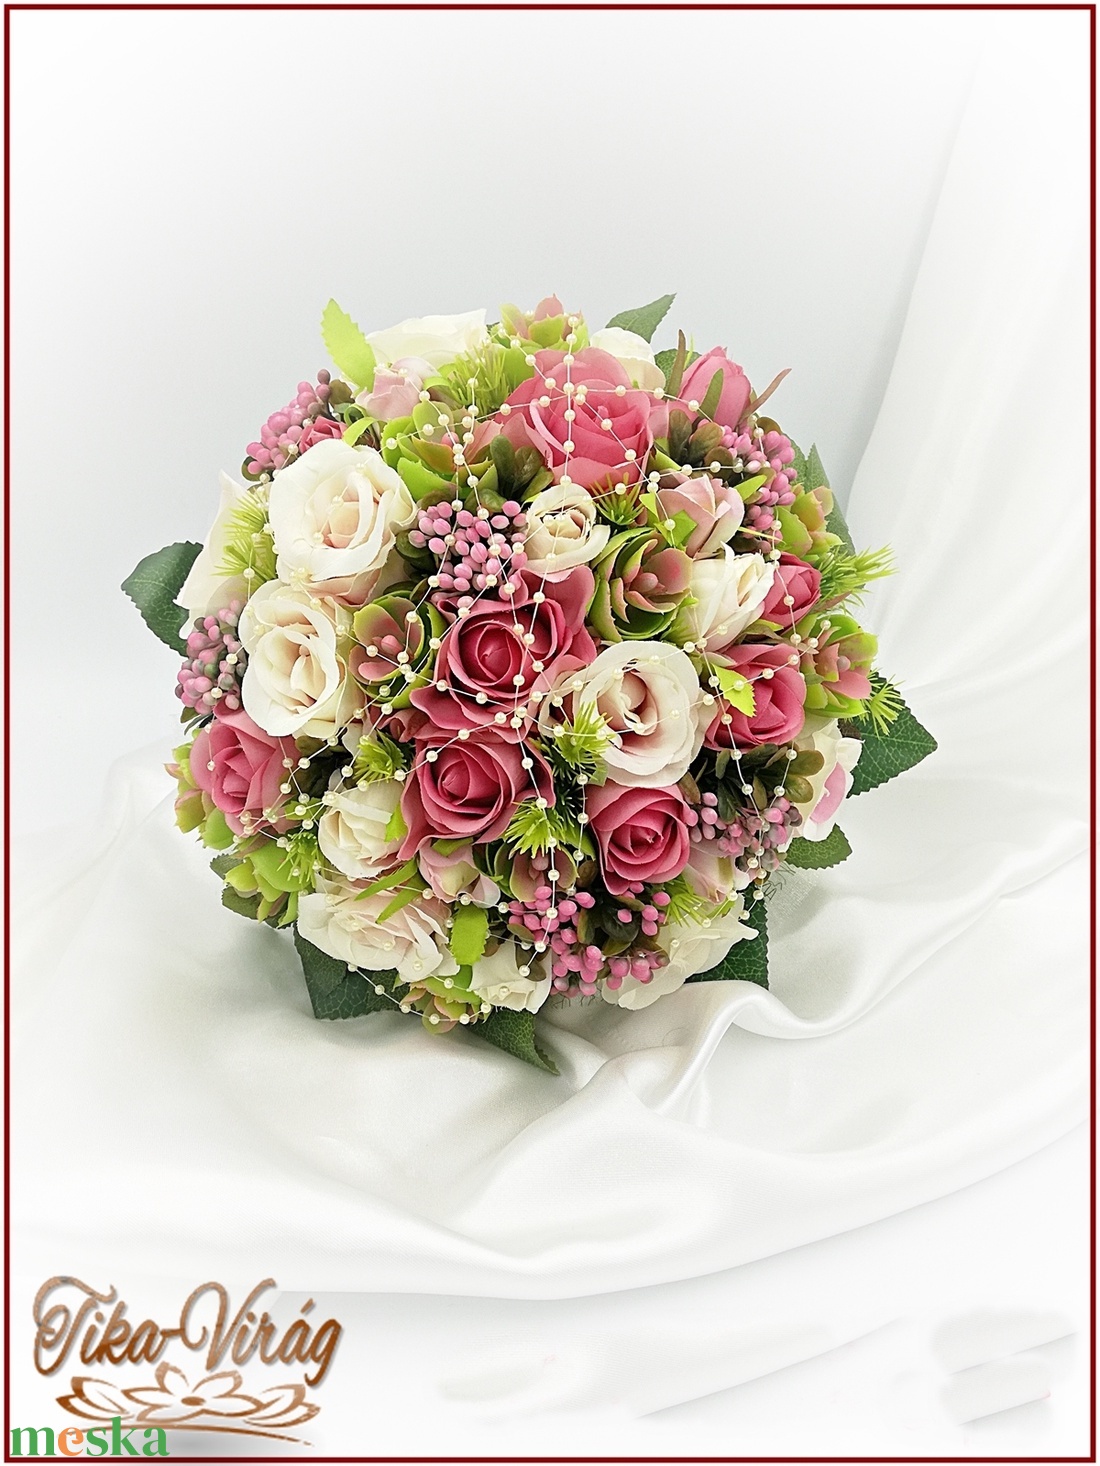 Antik-rózsaszínű-rózsákból álló örök-csokor 170754_1. - esküvő - menyasszonyi- és dobócsokor - Meska.hu